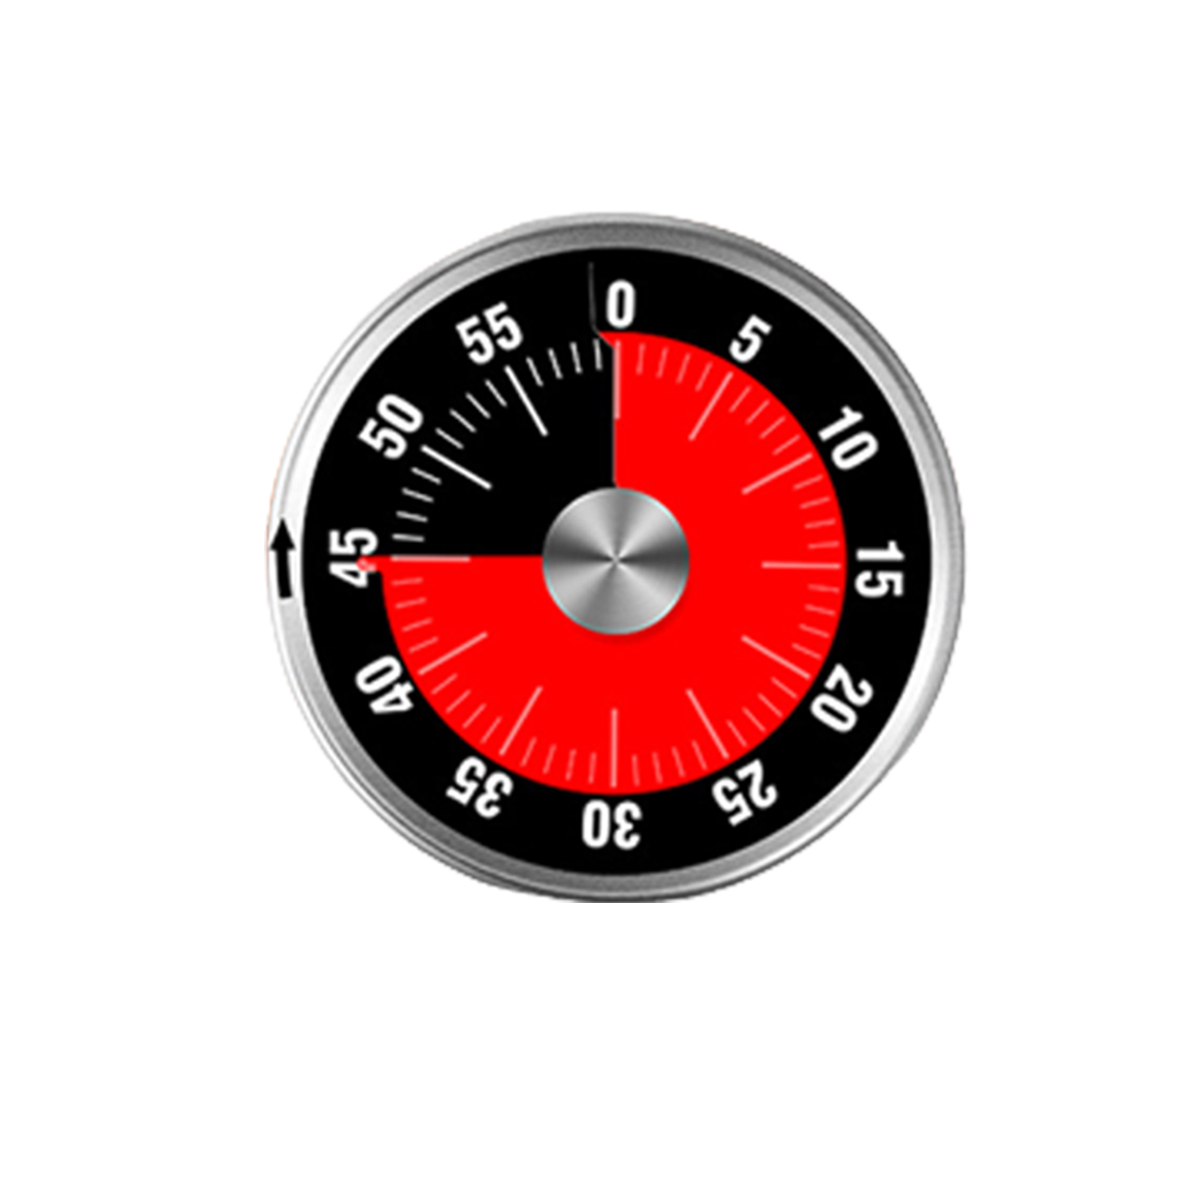 mechanisch Küchen-Timer Kochen Zeitmanagement Countdown-Timer Edelstahl SYNTEK Timer Magnet Küchentimer Backen mit